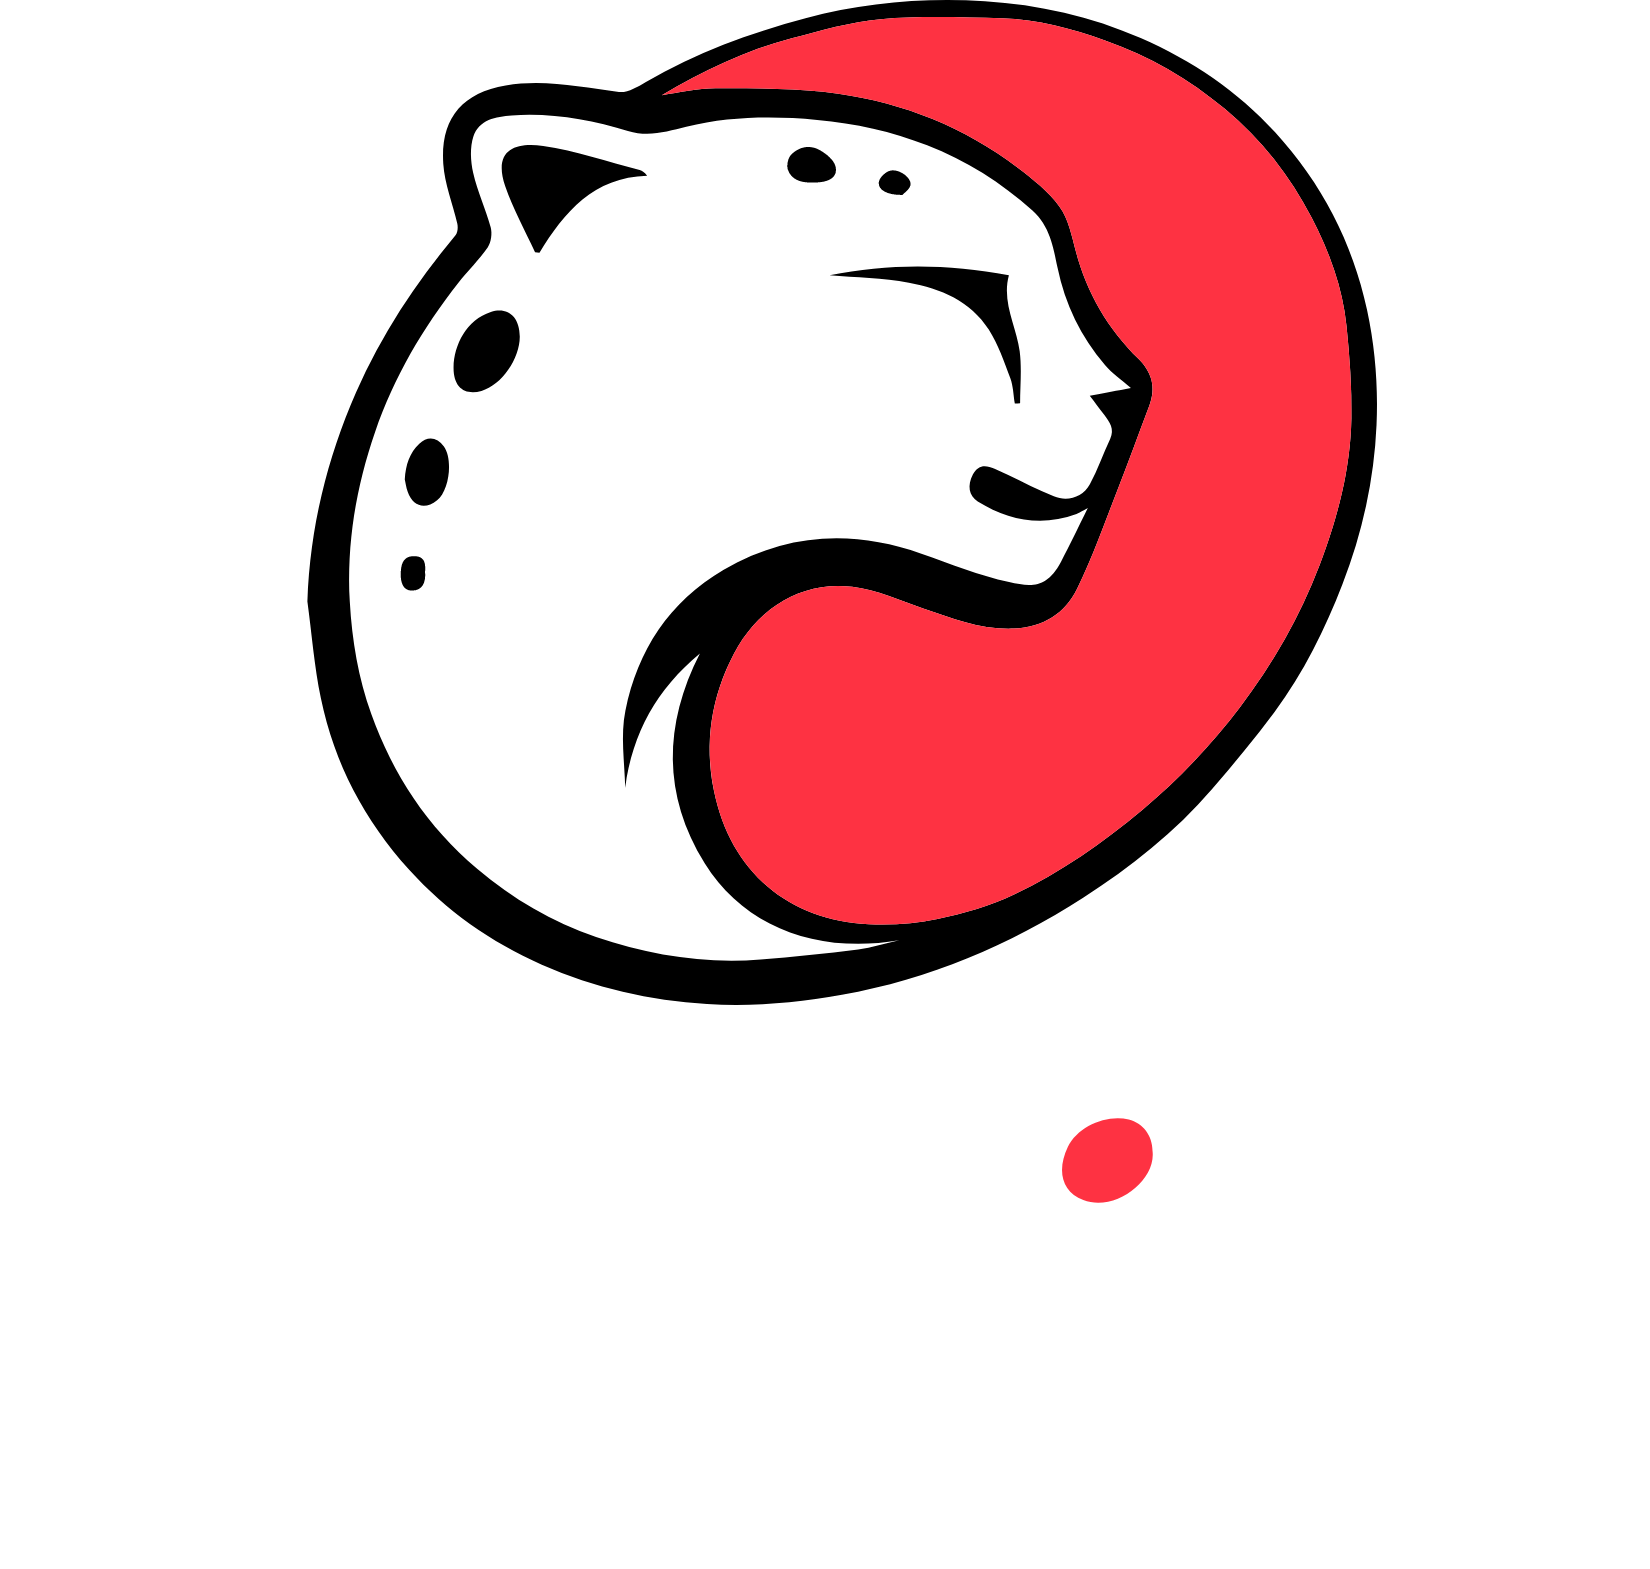 Playtika Logo groß für dunkle Hintergründe (transparentes PNG)